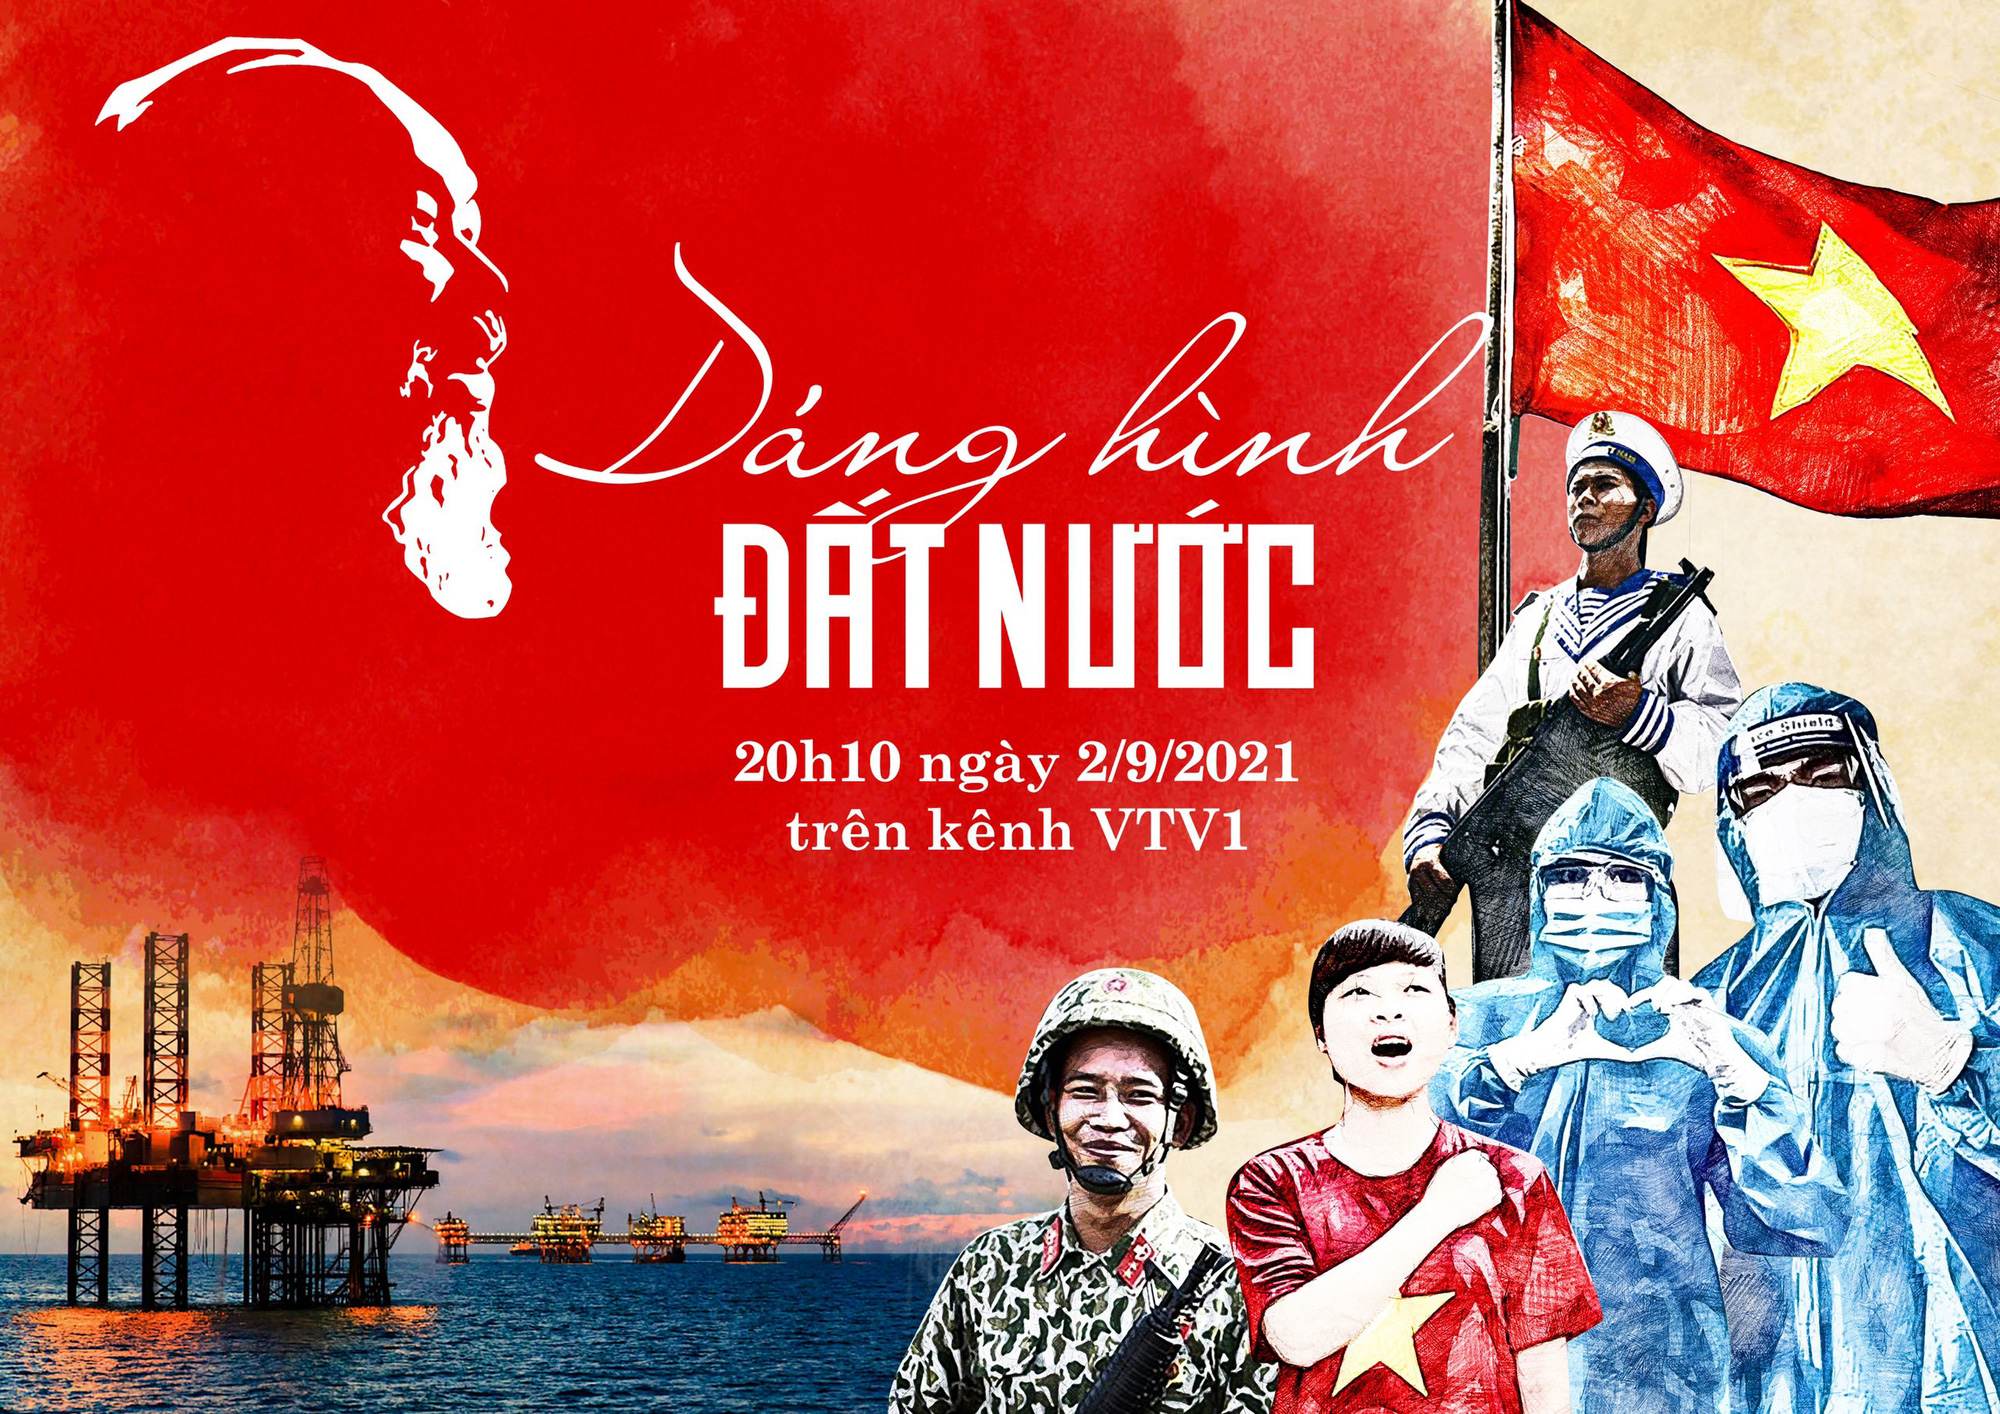 Quốc khánh: Cùng chung niềm tự hào về quốc kỳ, ASEAN, với những khoảnh khắc đầy cảm xúc và tình yêu dành cho đất nước Việt Nam.